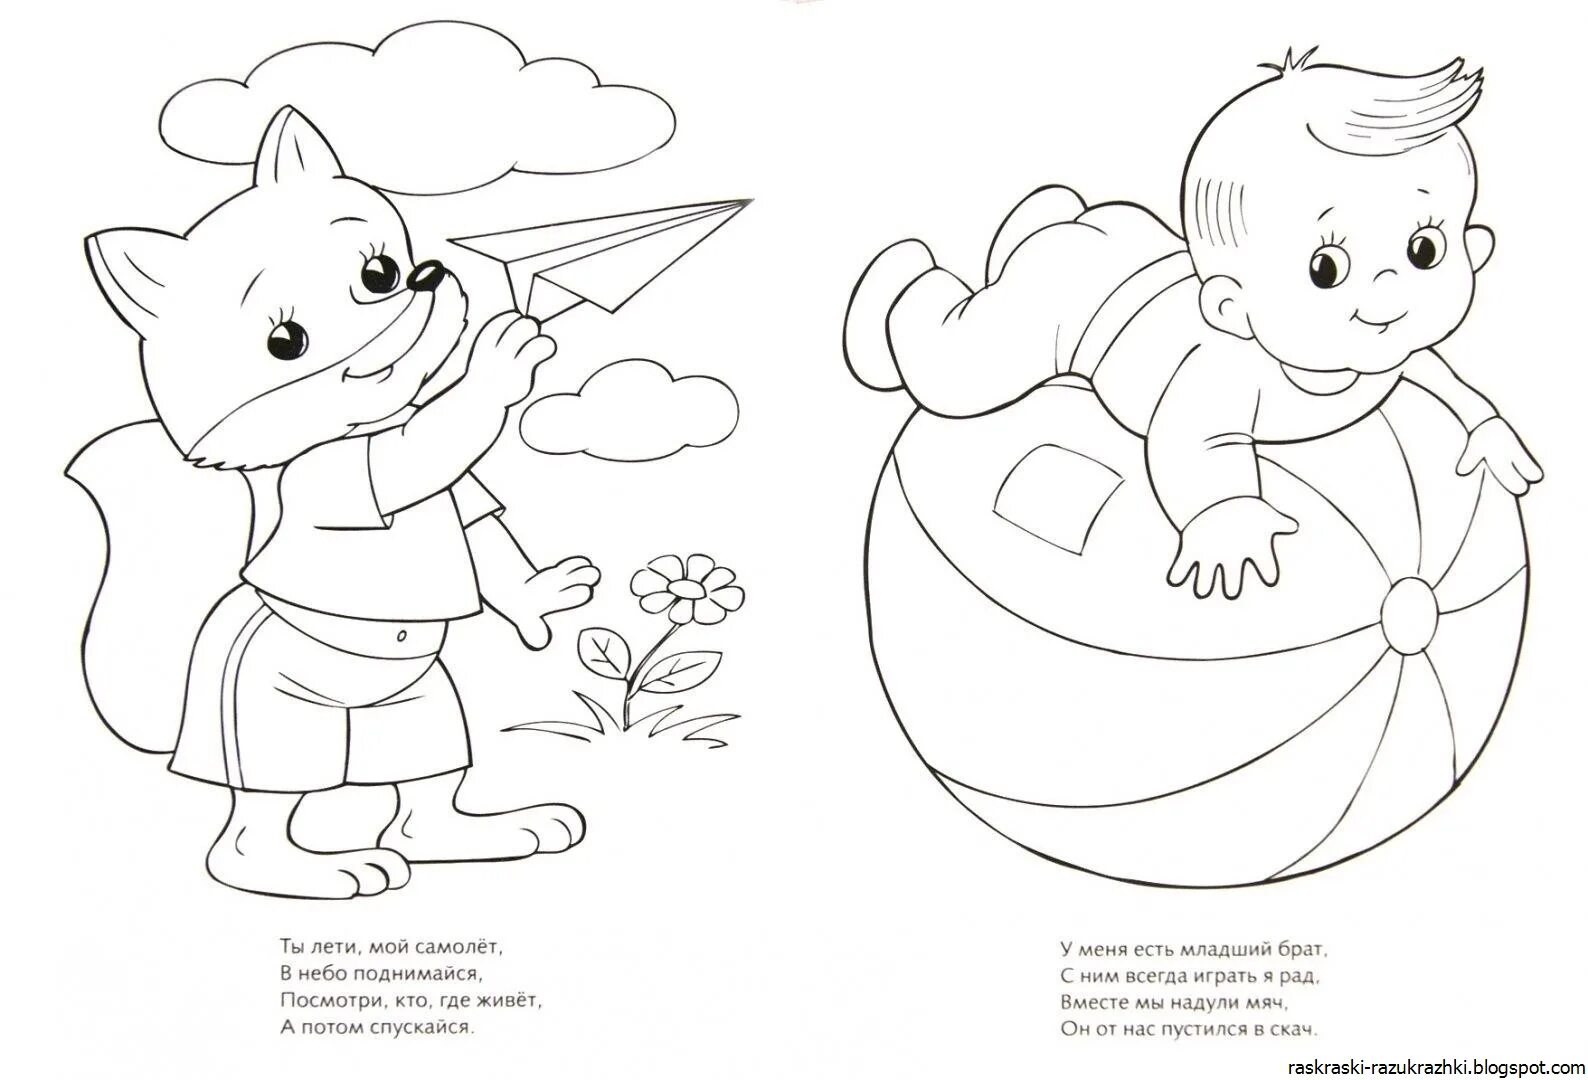 2 drawings per sheet for kids #21